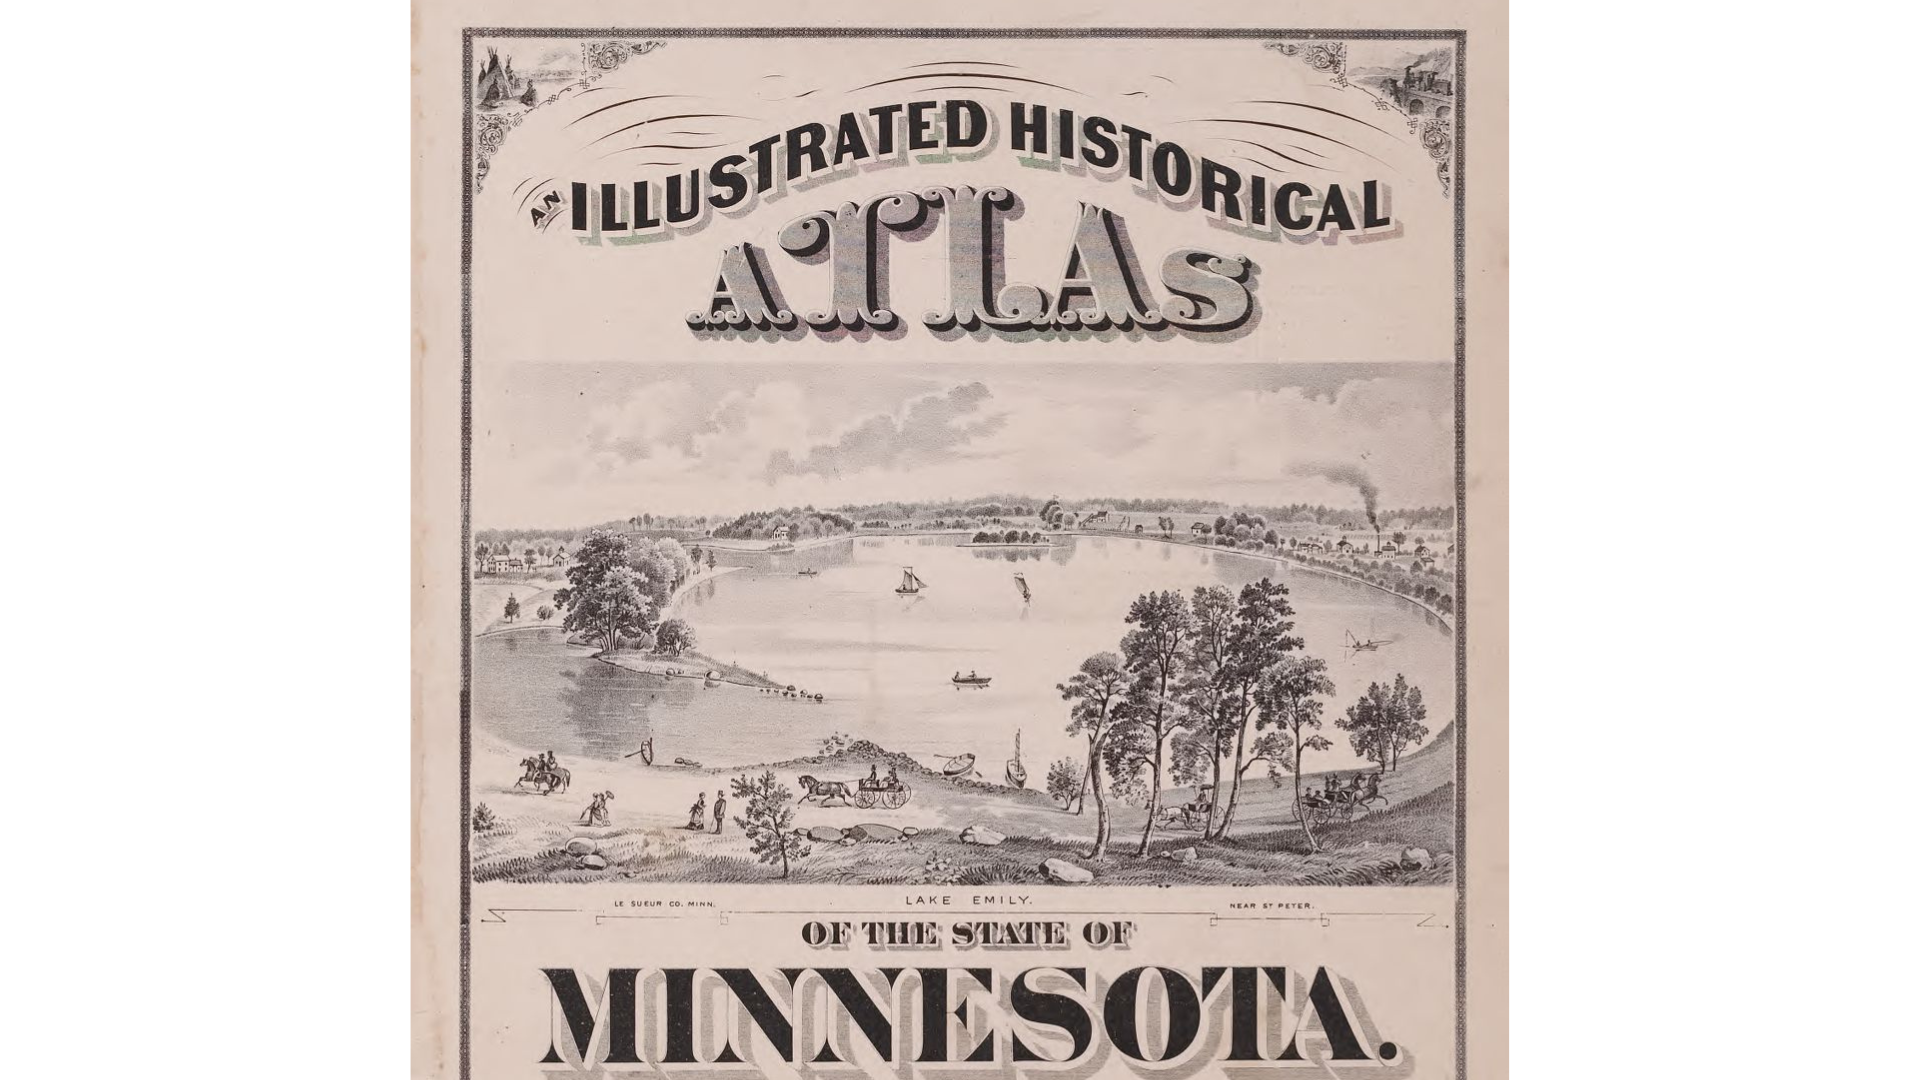 Illustrated Historical Atlas of Minnesota